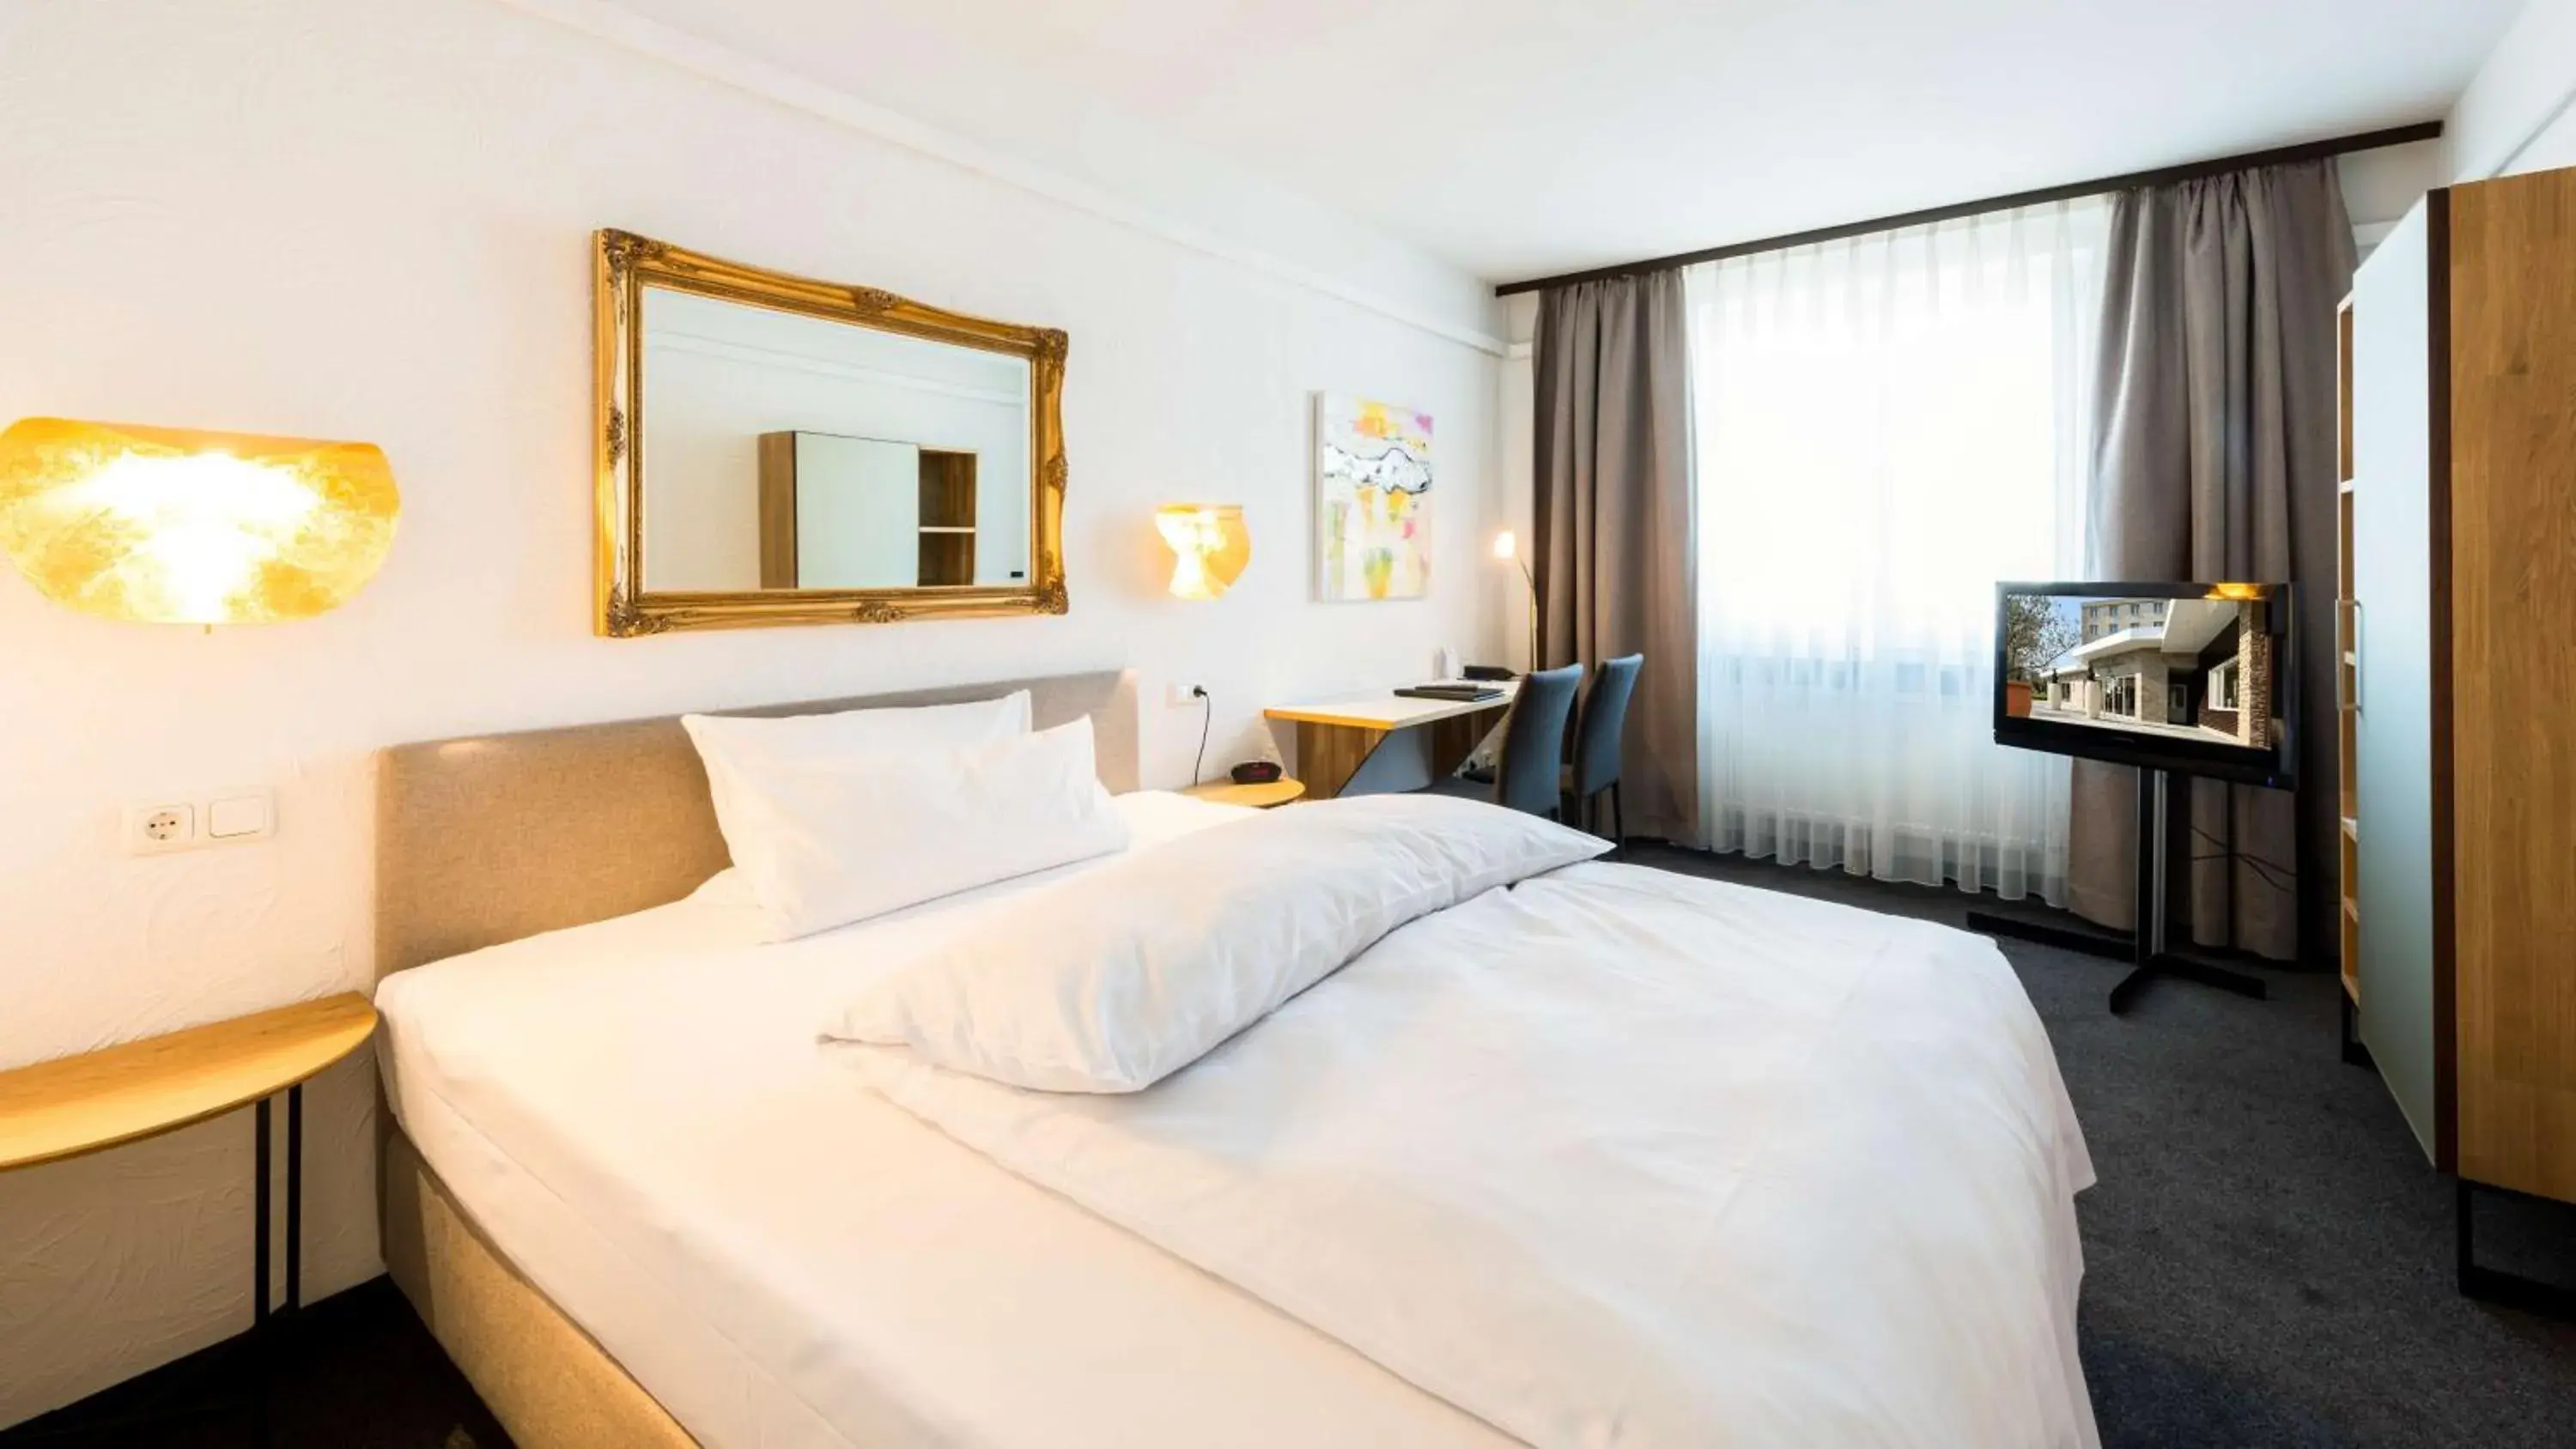 Bedroom, Bed in Best Western Hotel Mainz